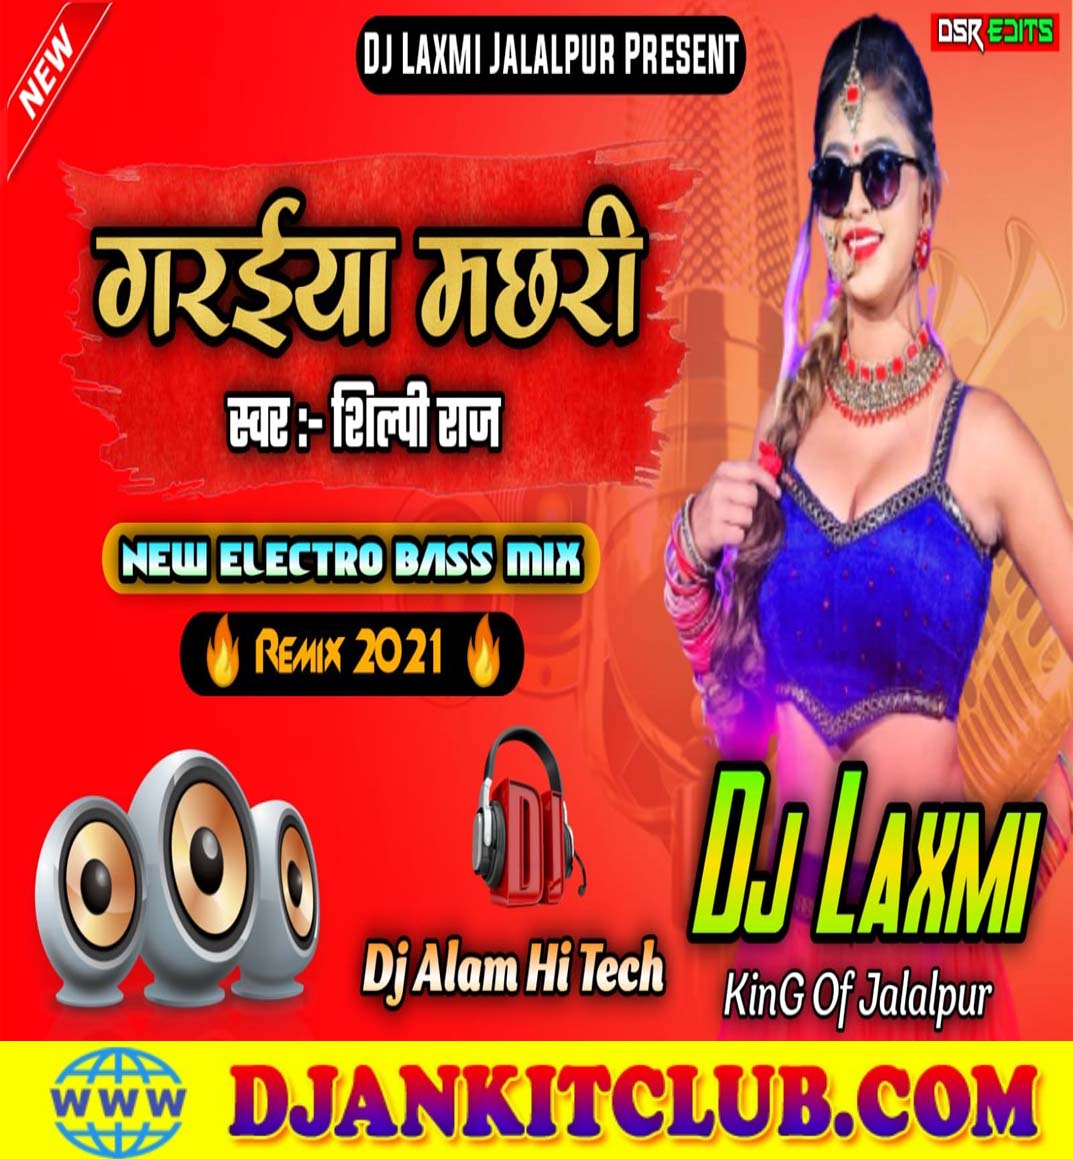 Saiya Marela Garaiya Machhari ( Shilpi Raj ) Dj Laxmi Jalalpur Ft Dj Alam High Tech